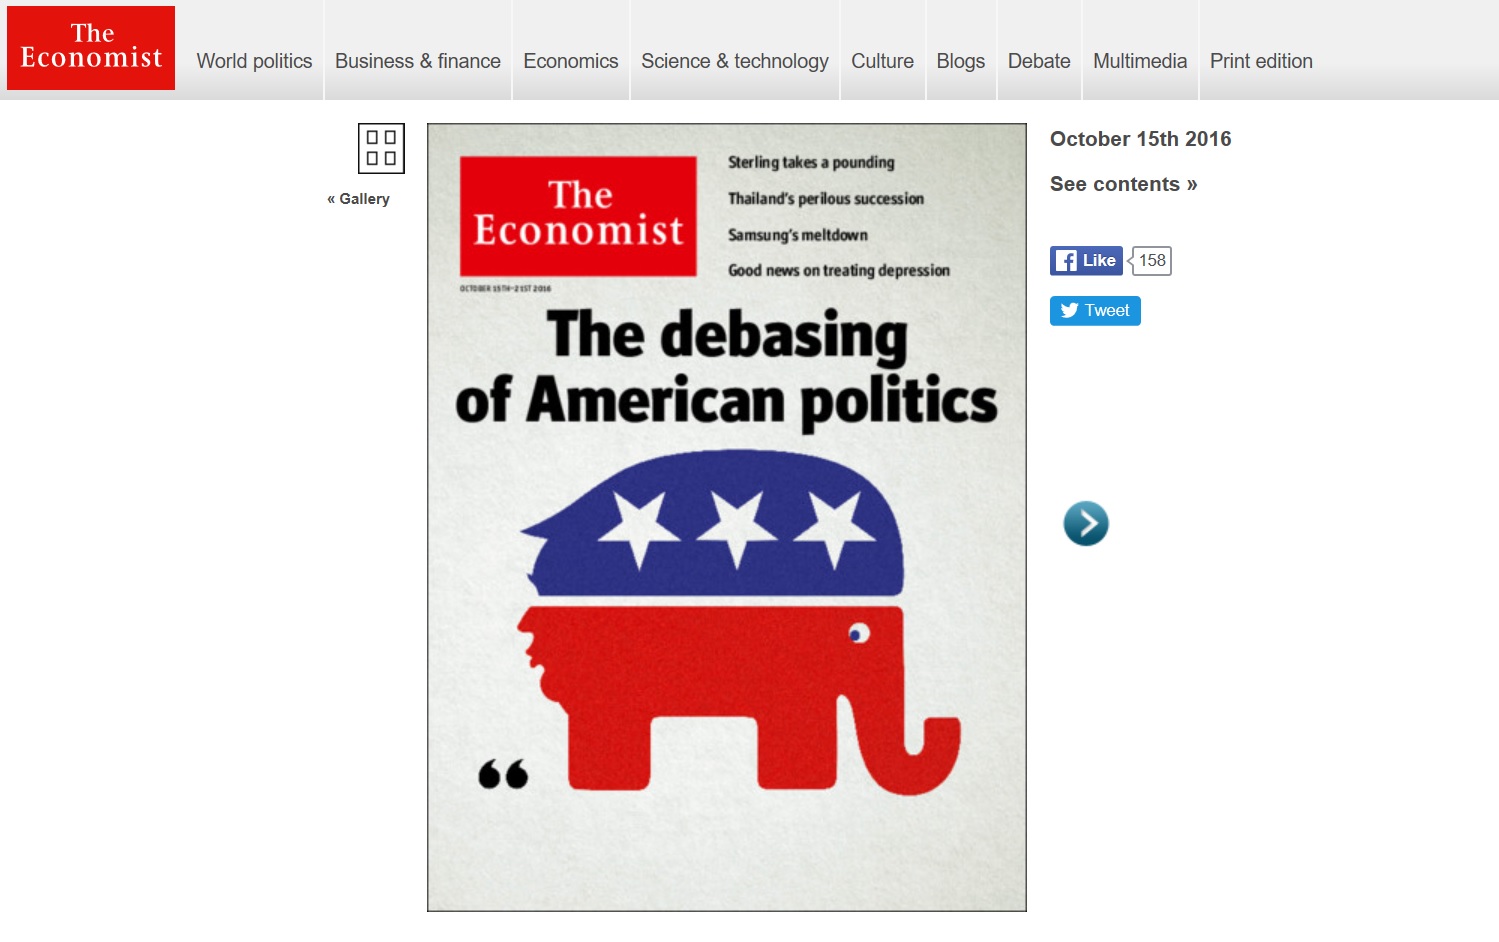 Trump jako tyłek republikańskiego słonia. Nowa okładka The Economist szokuje wulgarnością